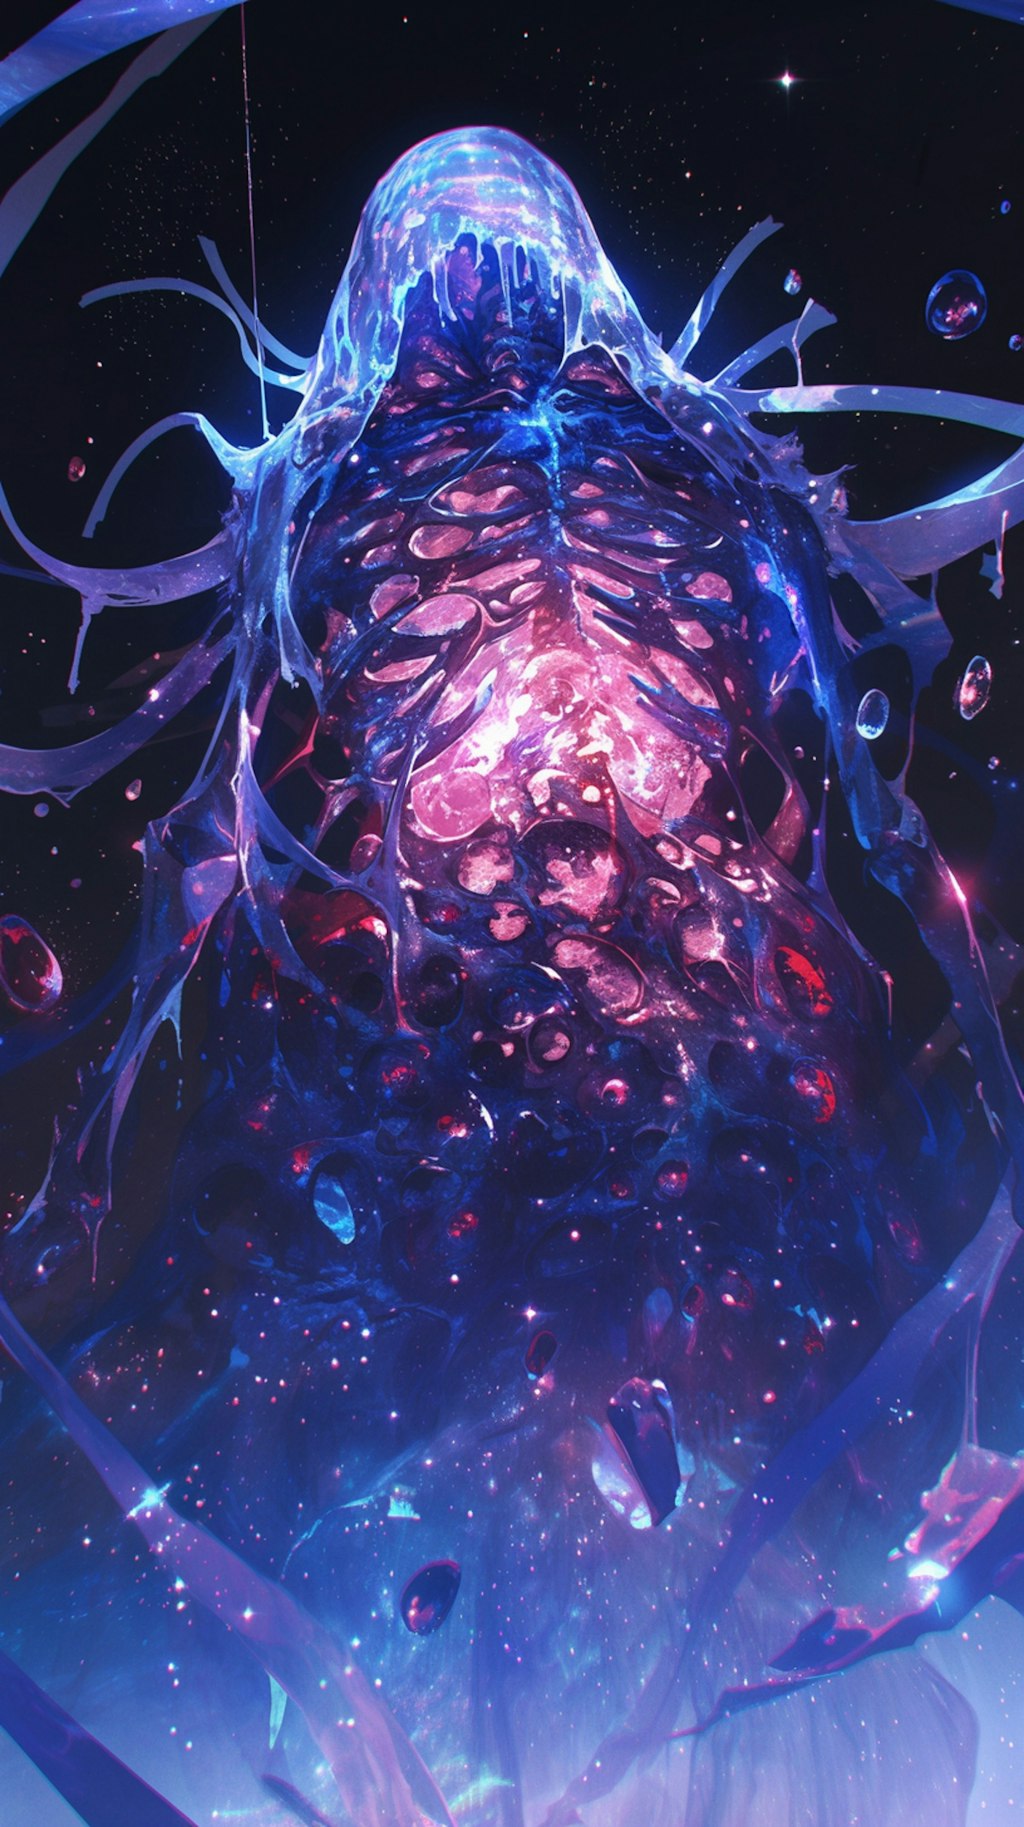 血管と骸骨のスライム巨人(銀河)３